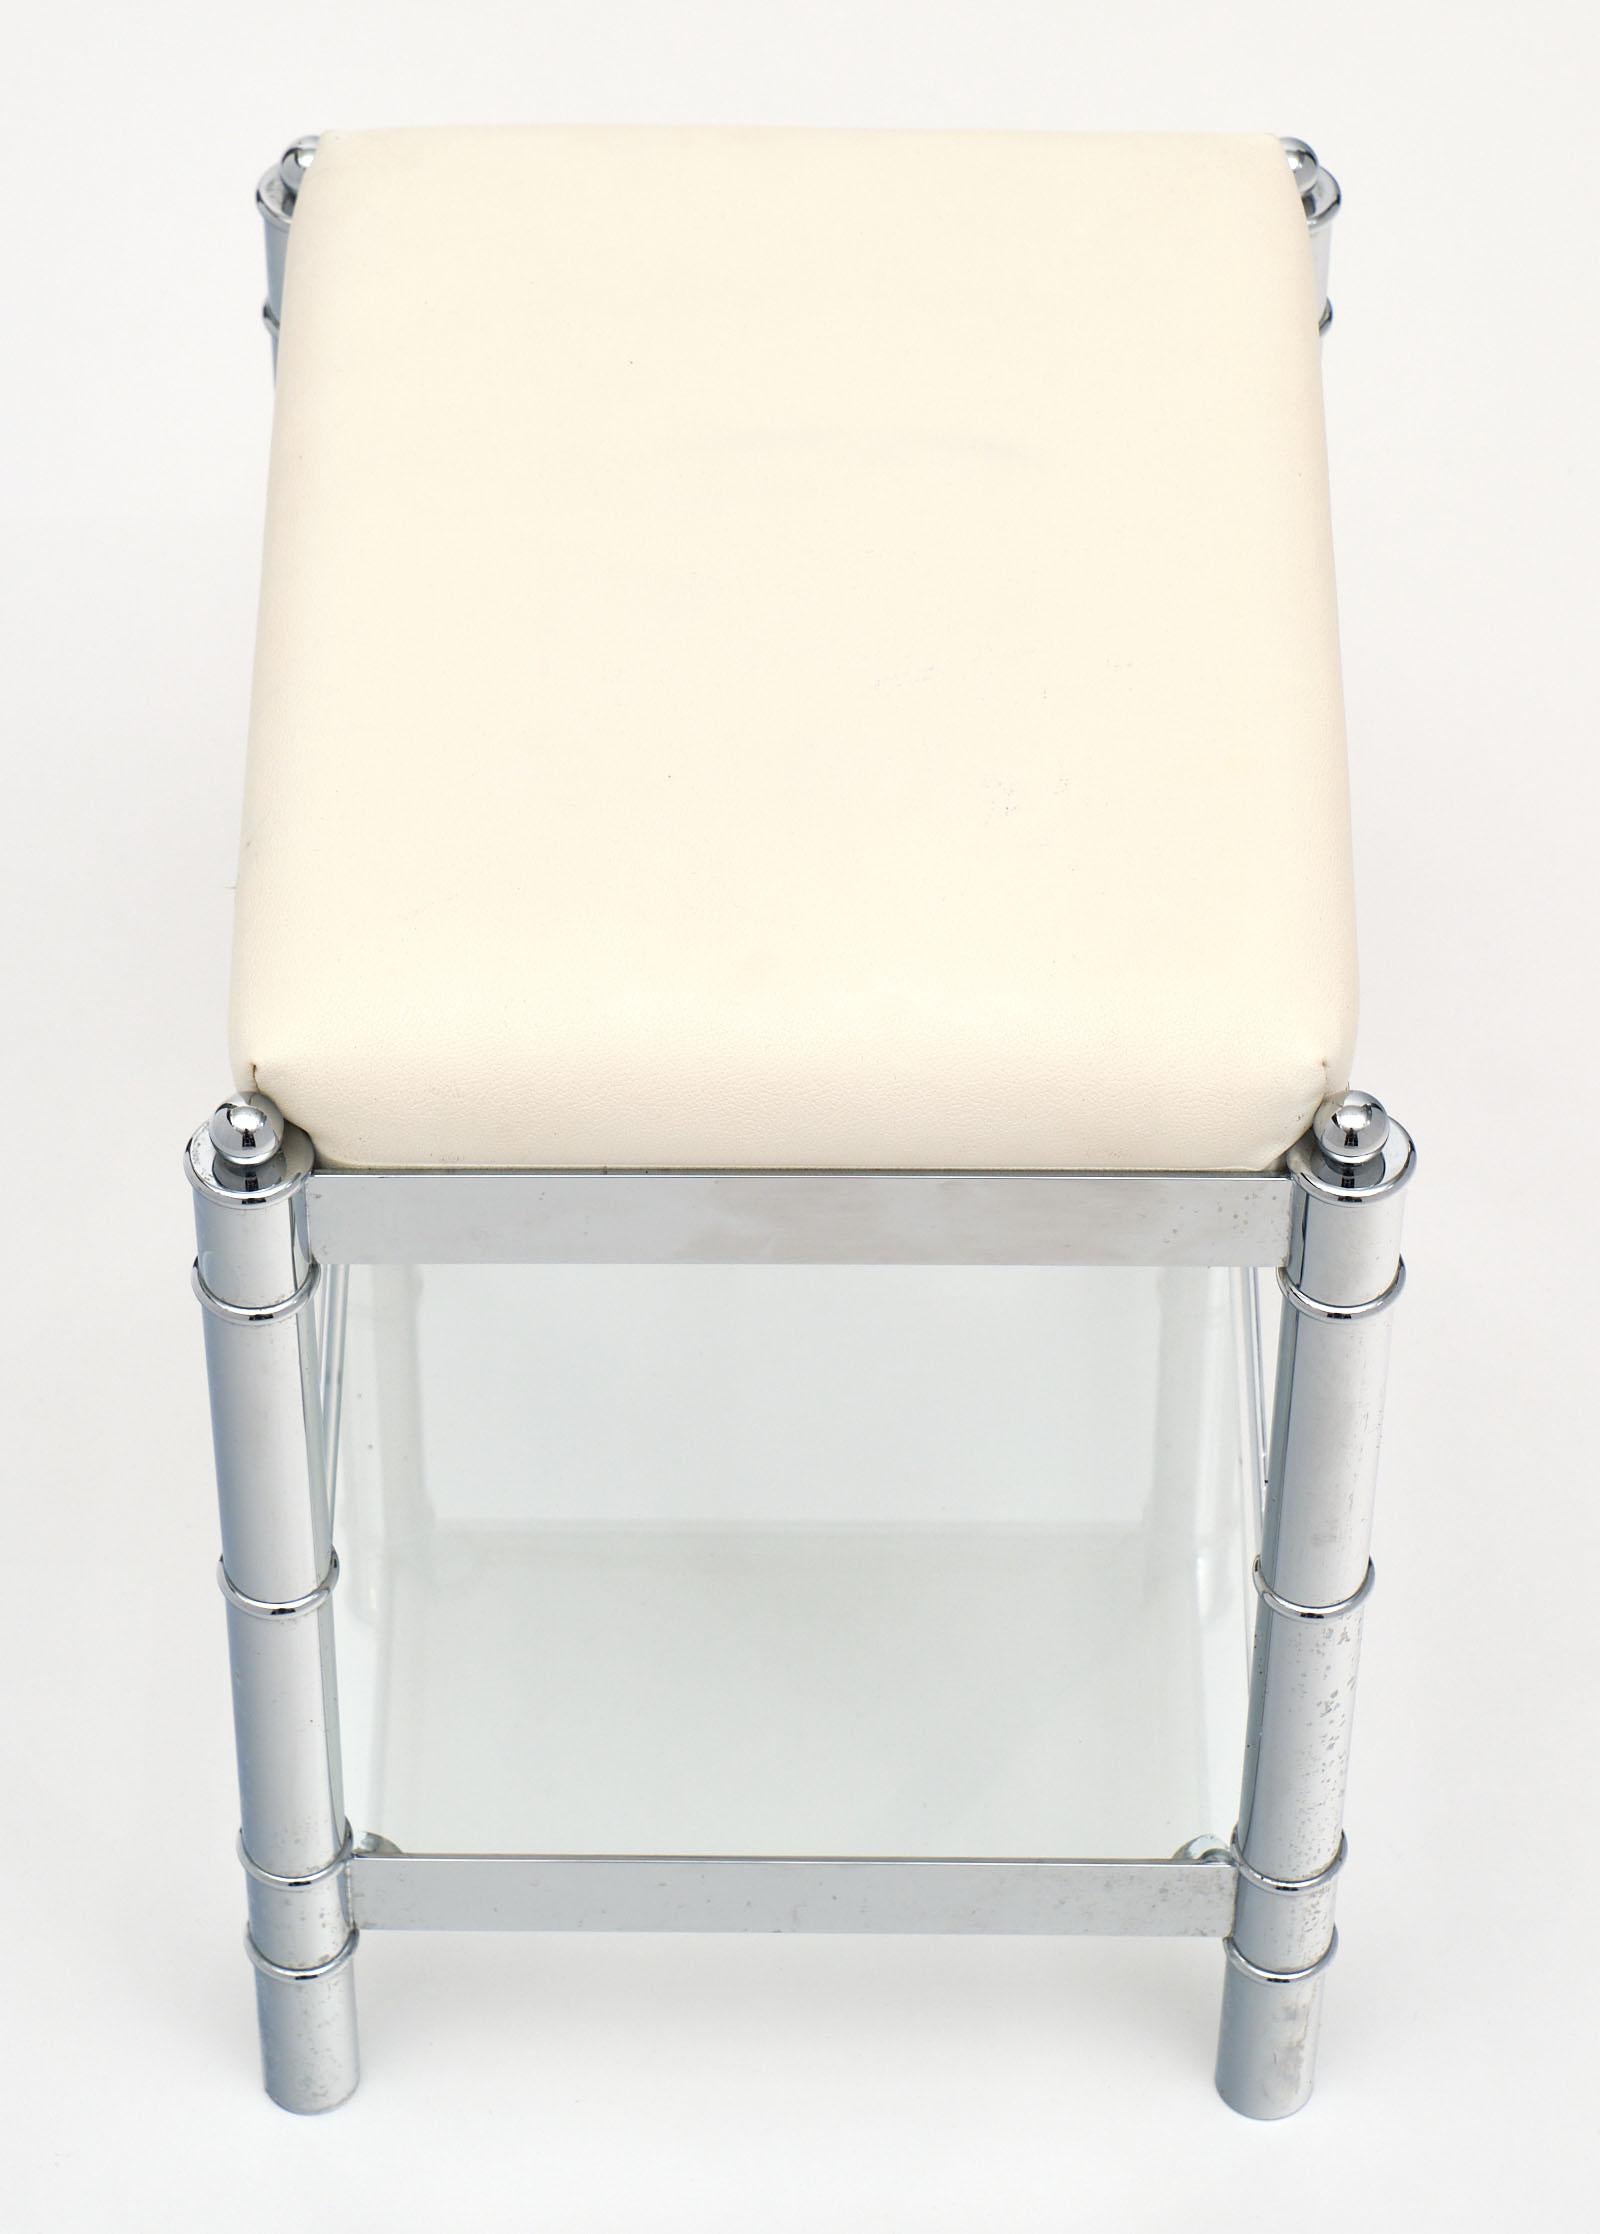 Upholstery Chrome Modernist Italian Stools For Sale